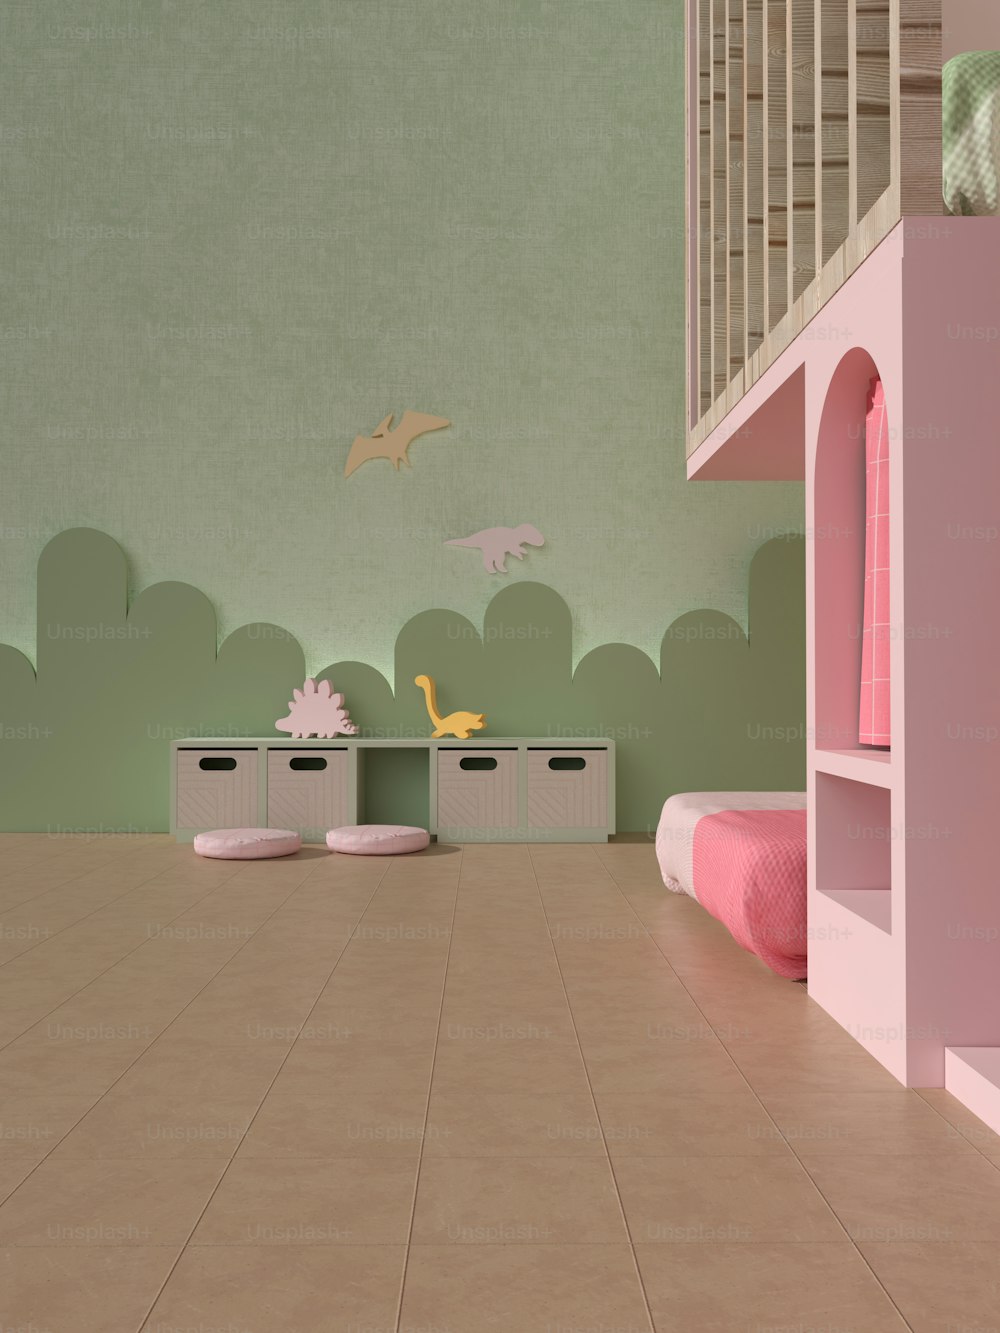 Une chambre d’enfant avec des meubles roses et des murs verts